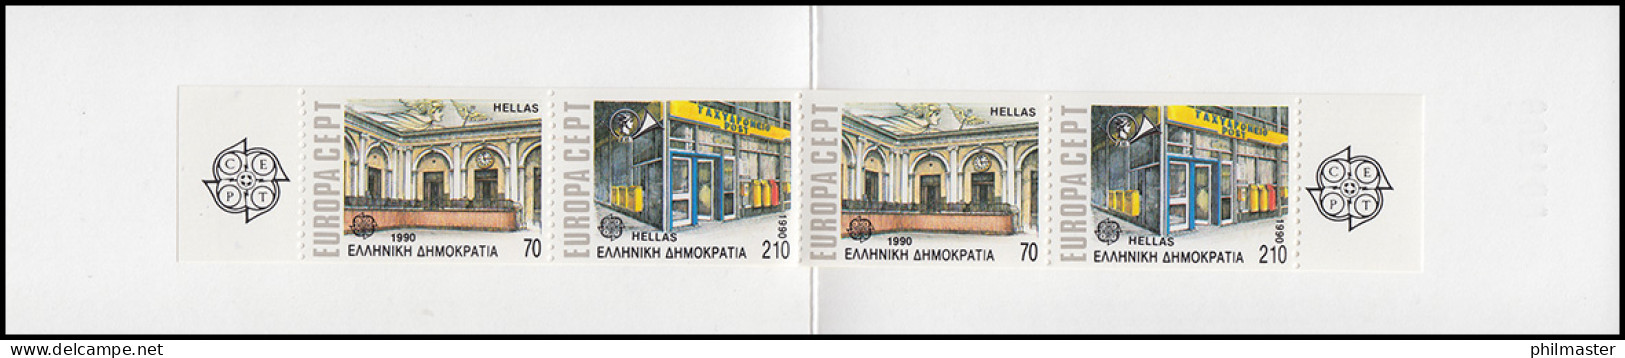 Griechenland Markenheftchen 13 Europa 1990, ** Postfrisch - Markenheftchen